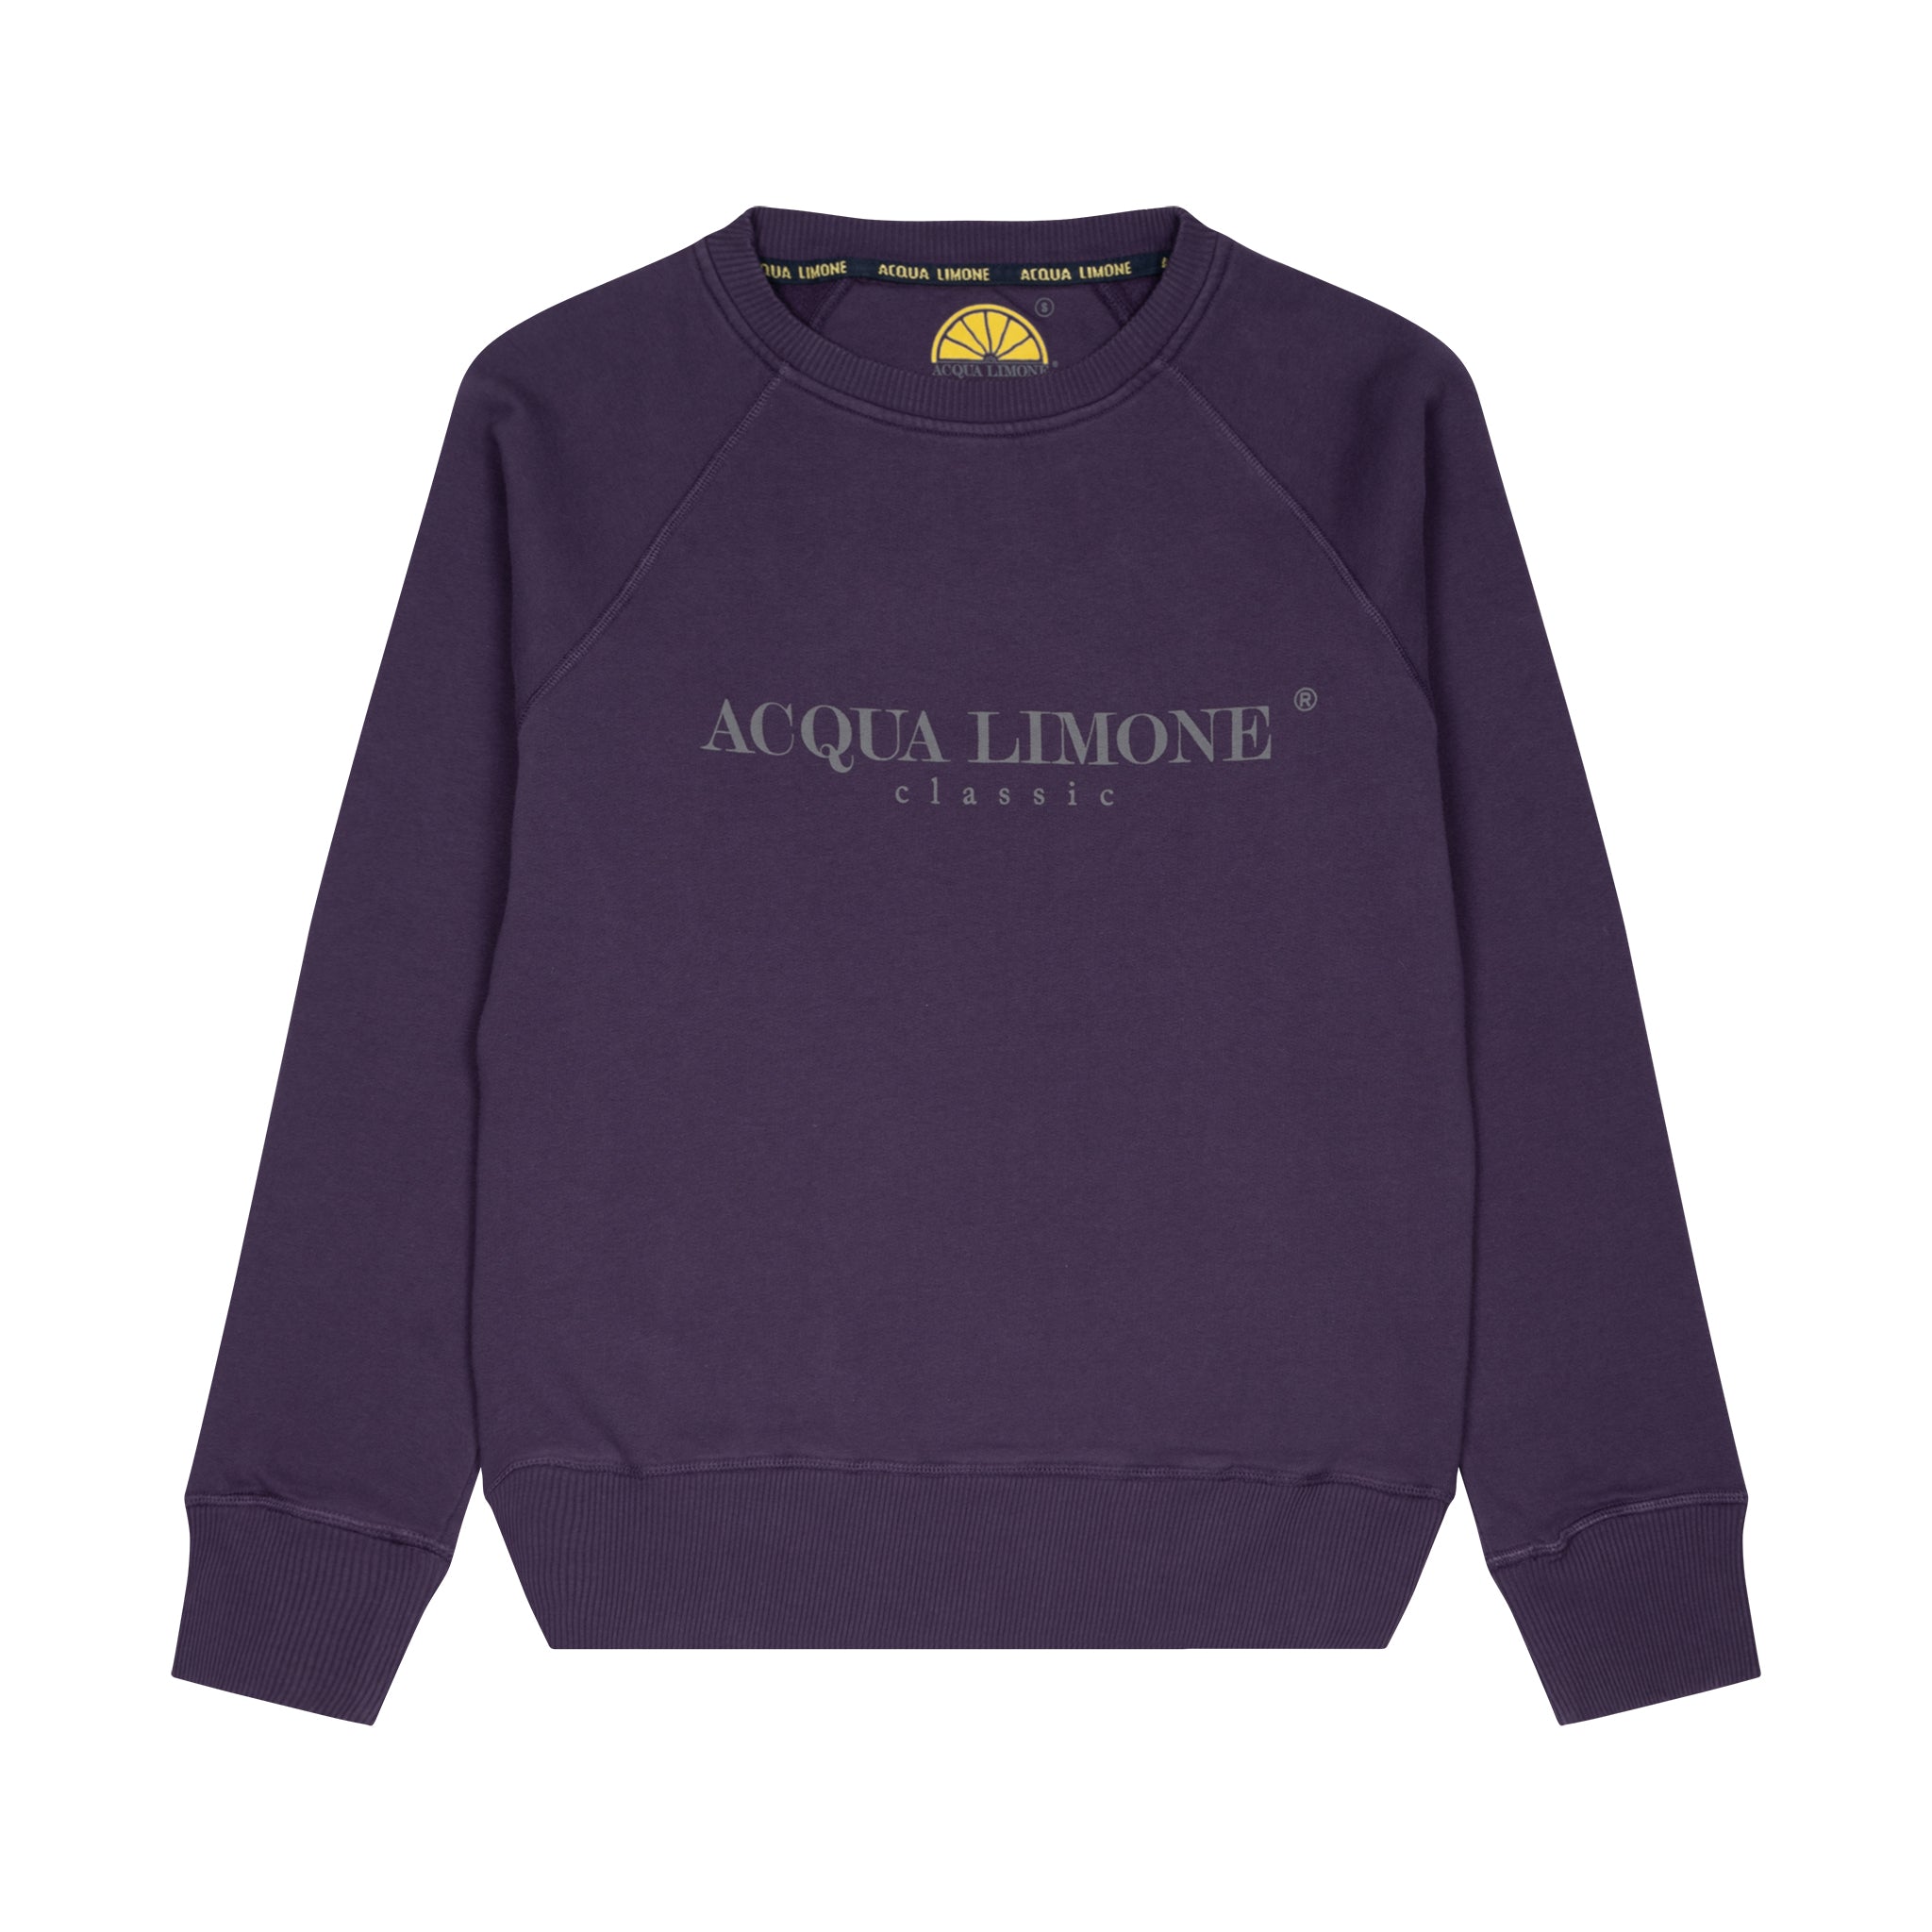 College Classic - Purple - 101 rib - Acqua Limone